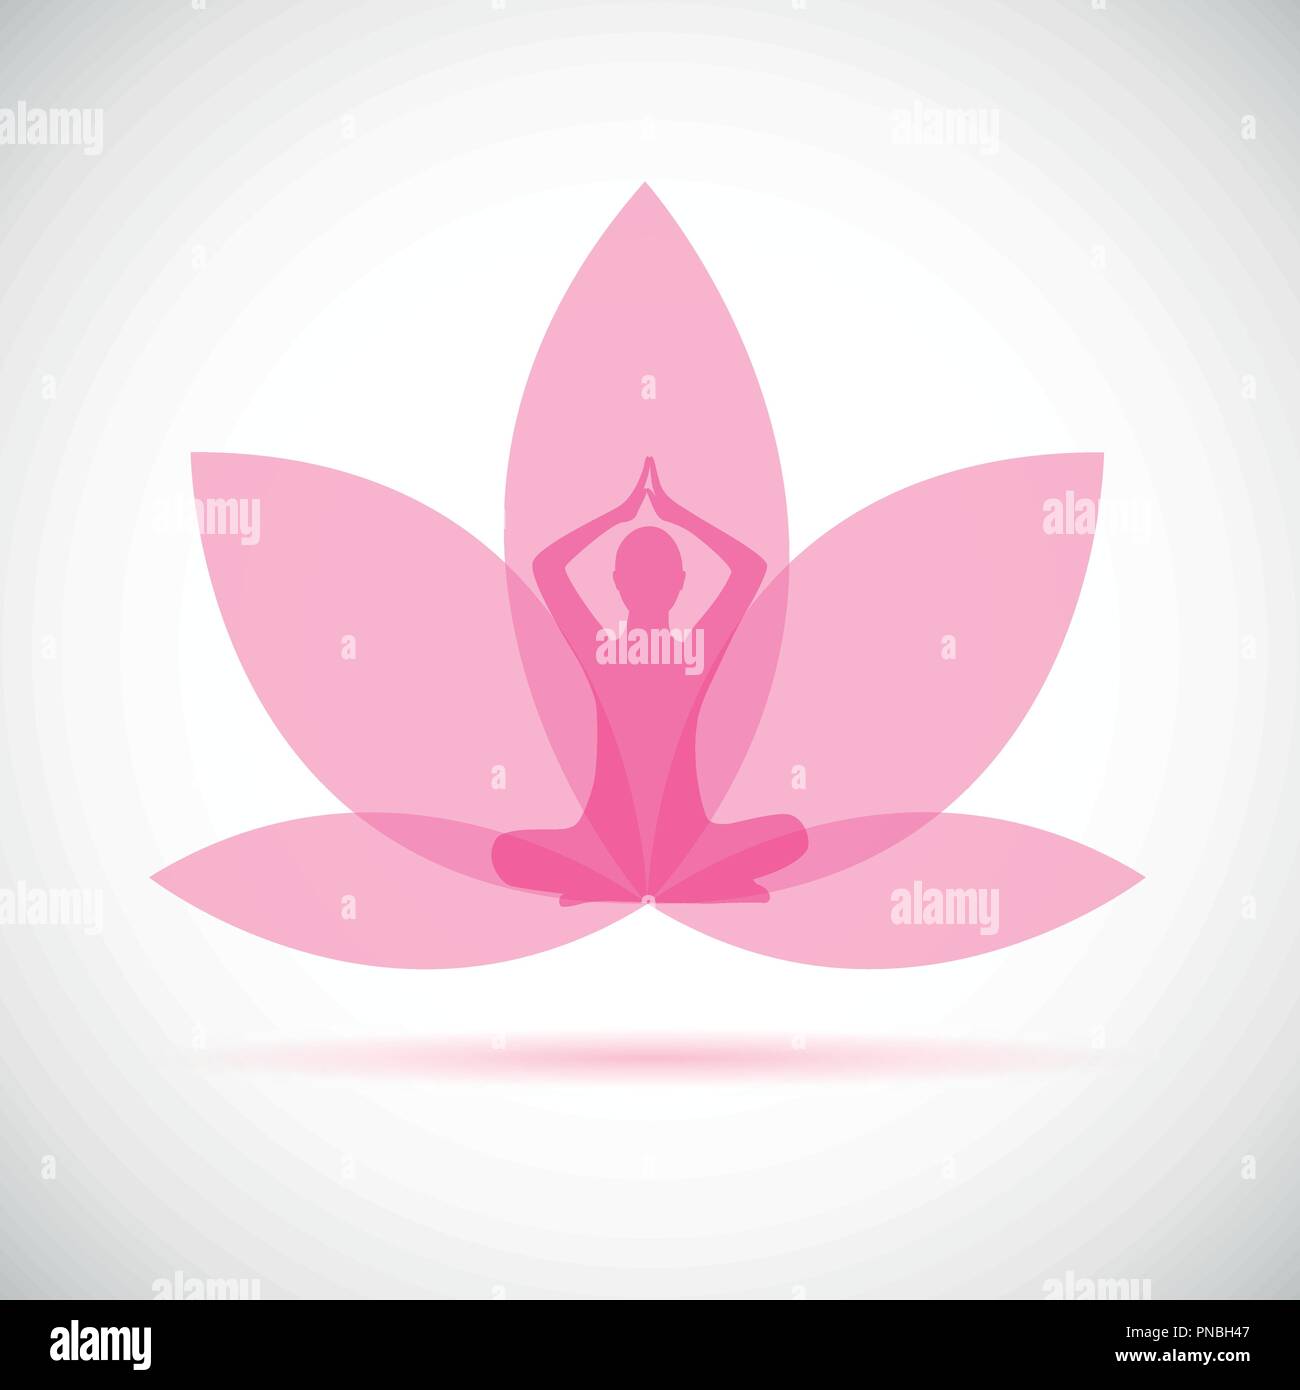 Jeune personne assise en position lotus méditation yoga silhouette avec Lily rose illustration vecteur EPS10 Illustration de Vecteur